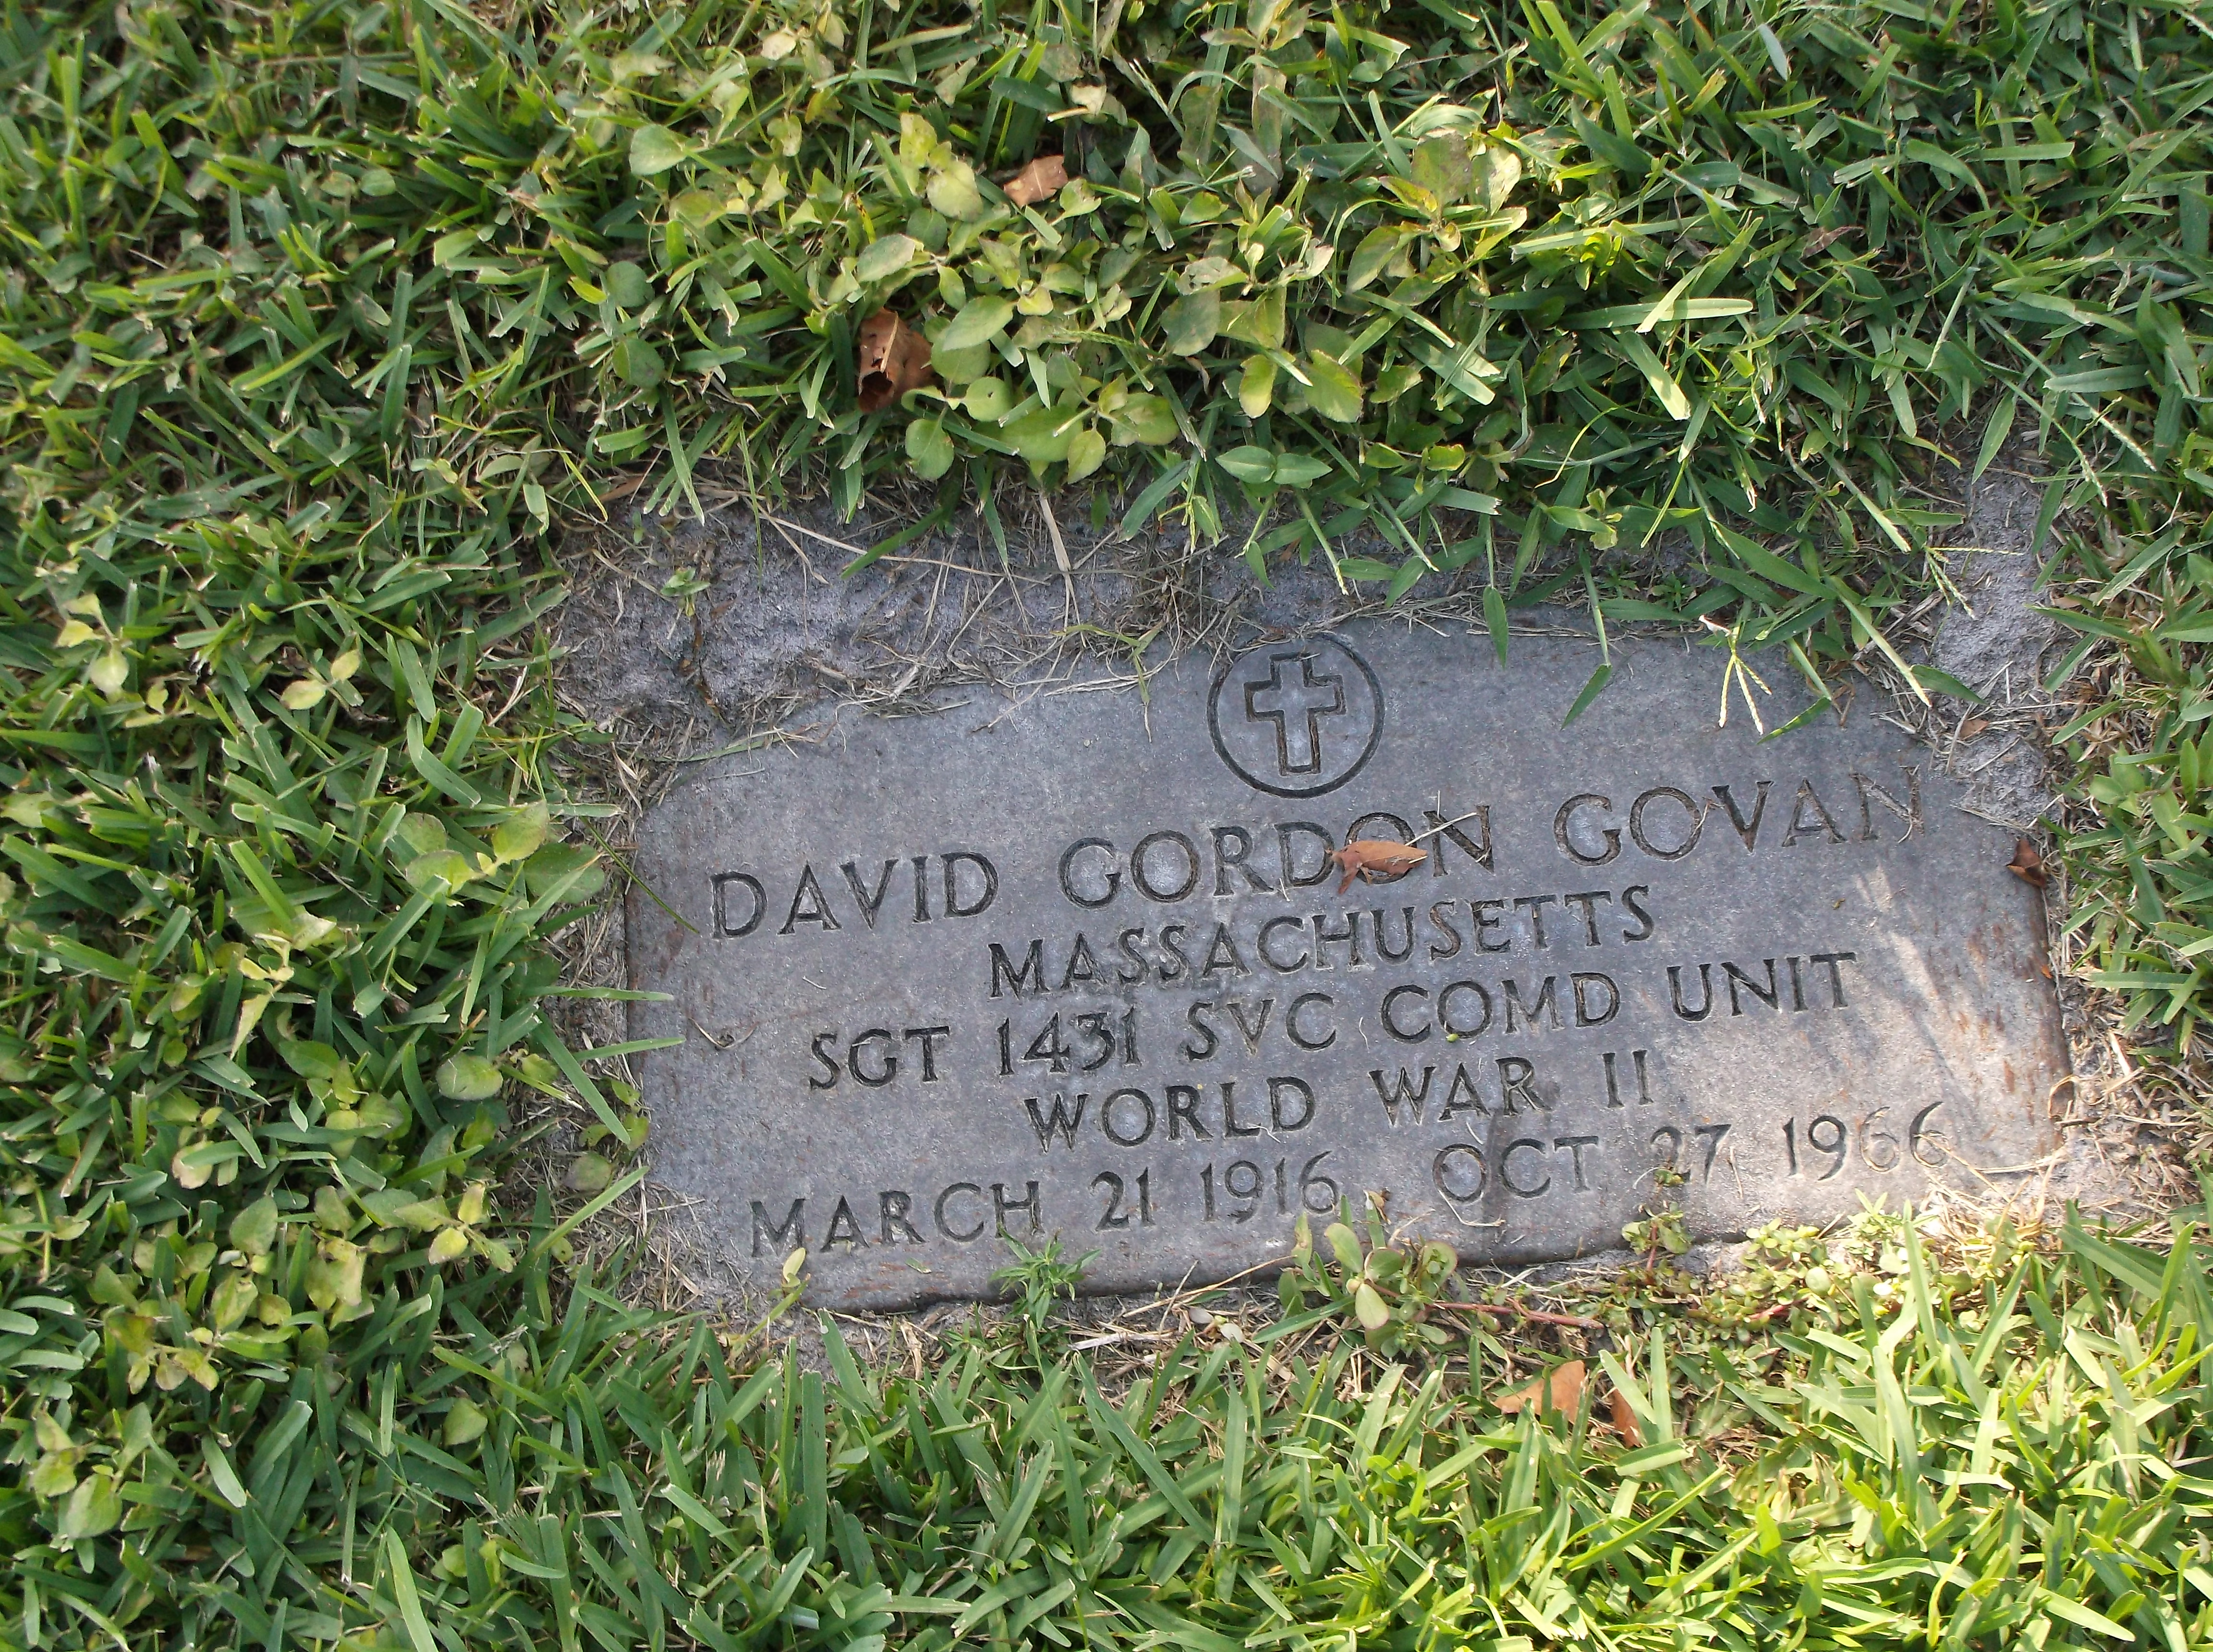 David Gordon Govan